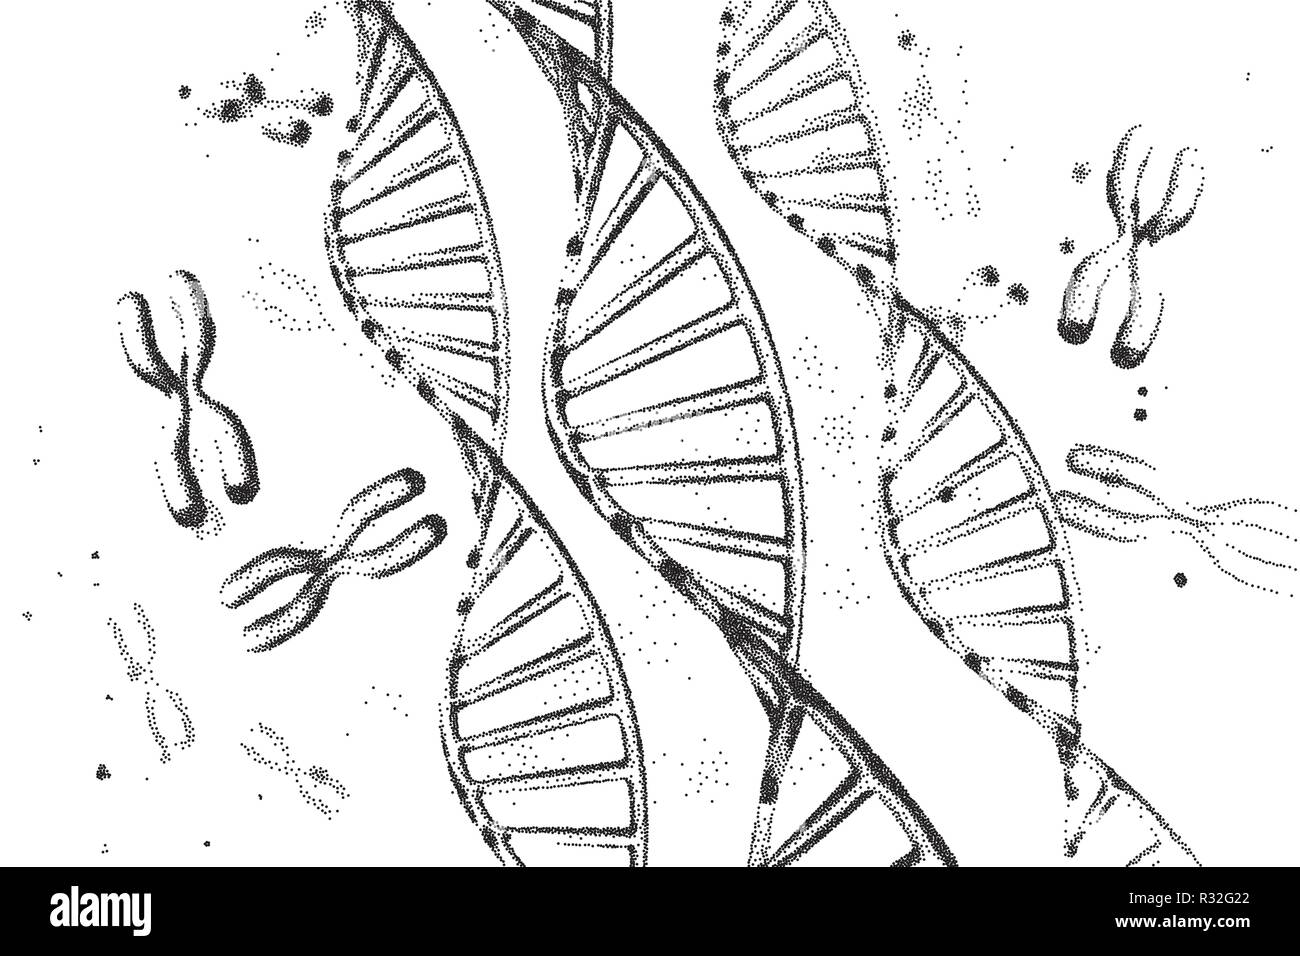 Genom-dna Vector Illustration. DNA-Struktur EPS 10. Genomsequenzierung Konzept der Gvo und Genom bearbeiten. Pharmazeutische Chemie und DNA-Forschung. Biotechnologie von Molekül Verbindung. Menschliche Genom crispr-DNA. Stock Vektor